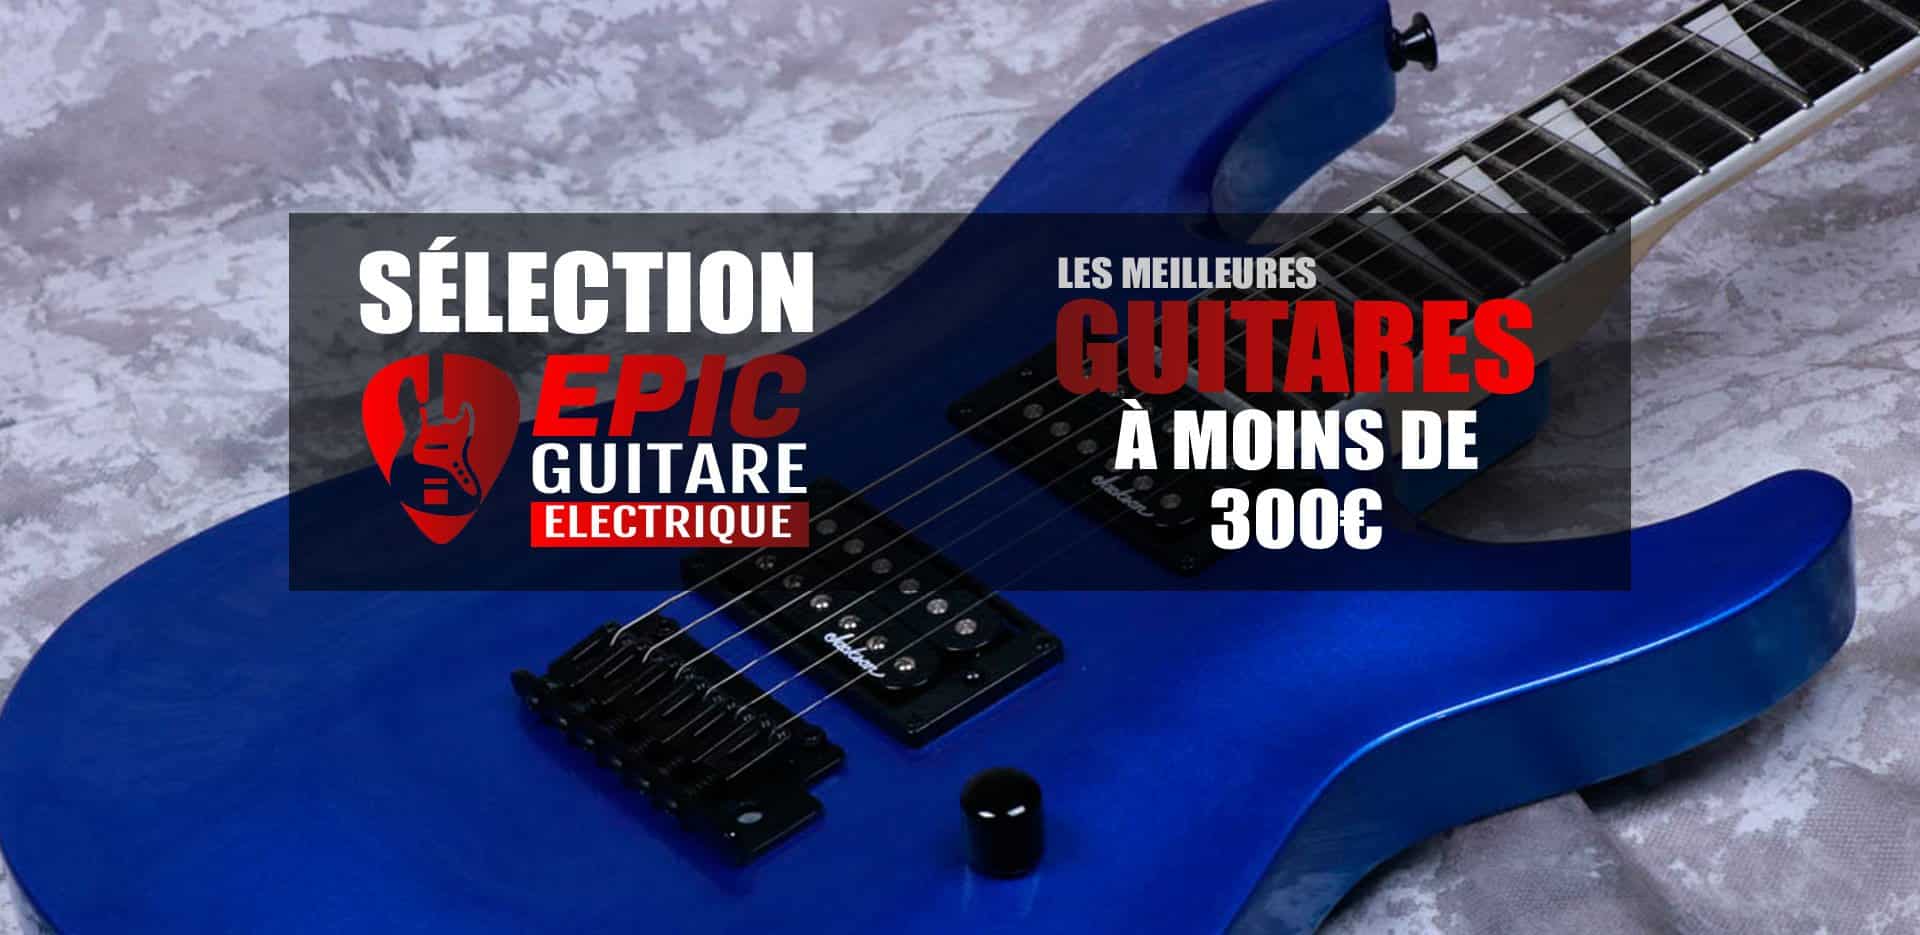 Trouver une bonne guitare électrique entre 200 et 900 euros. - Guitar Plug  and Play